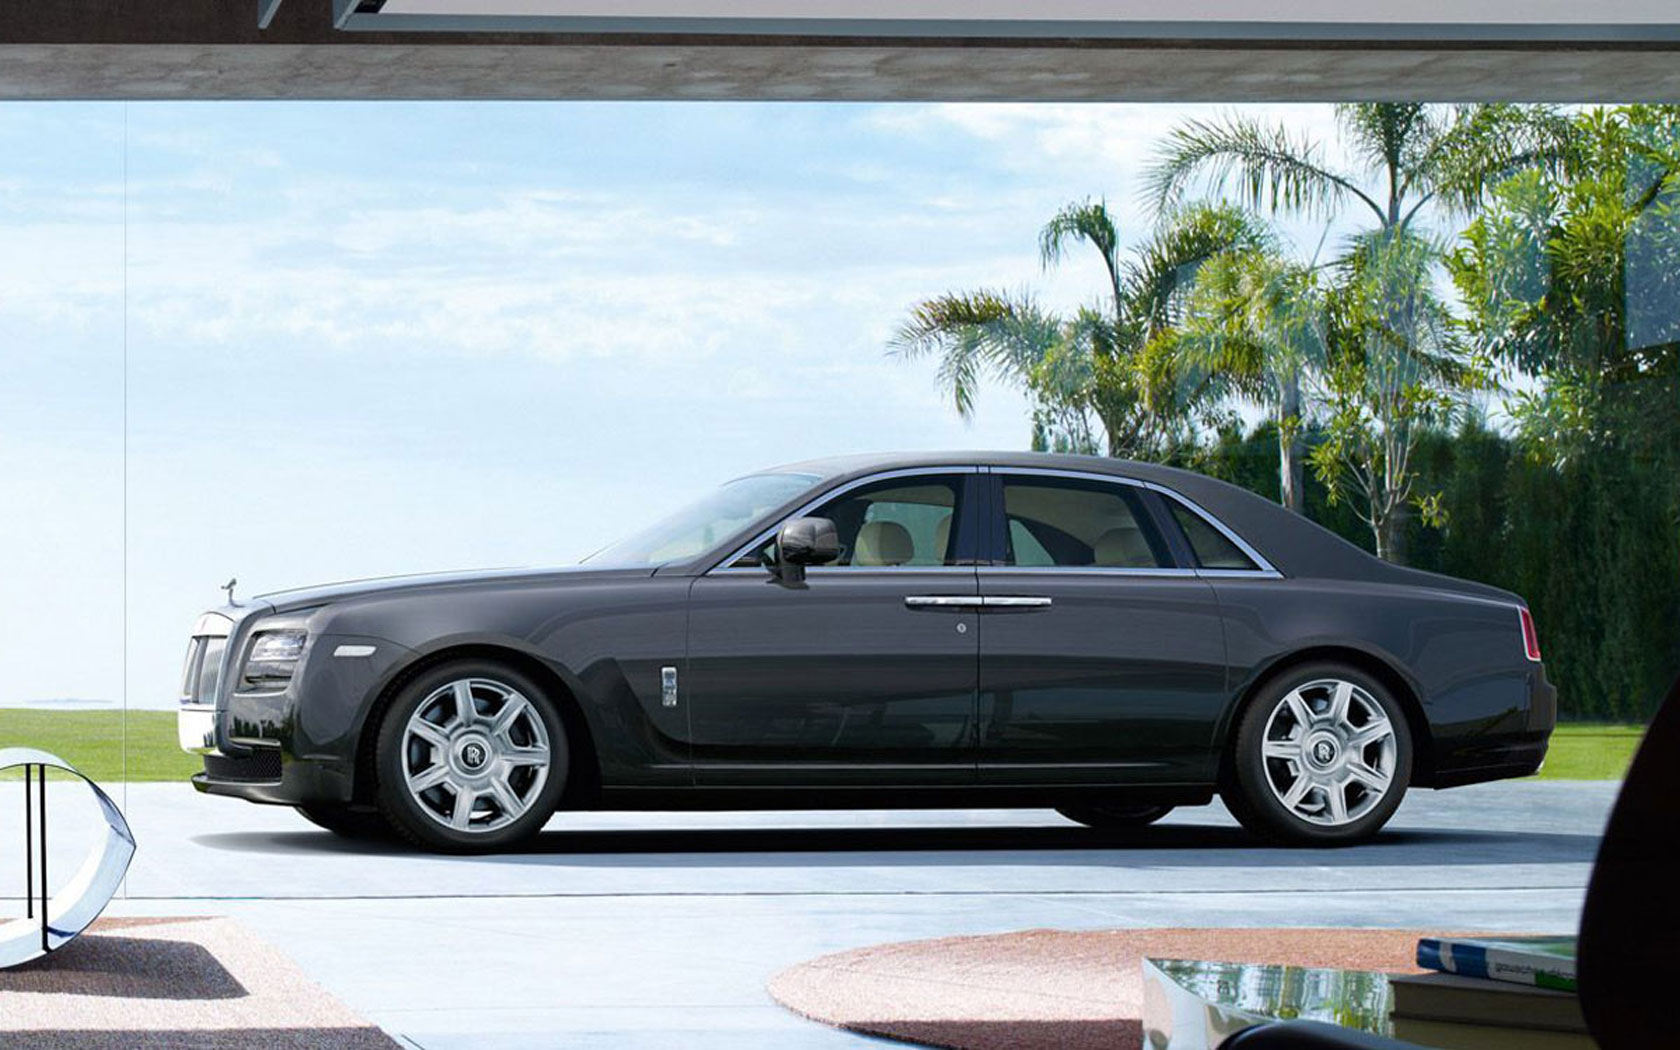  Rolls-Royce Ghost (2010-2014)